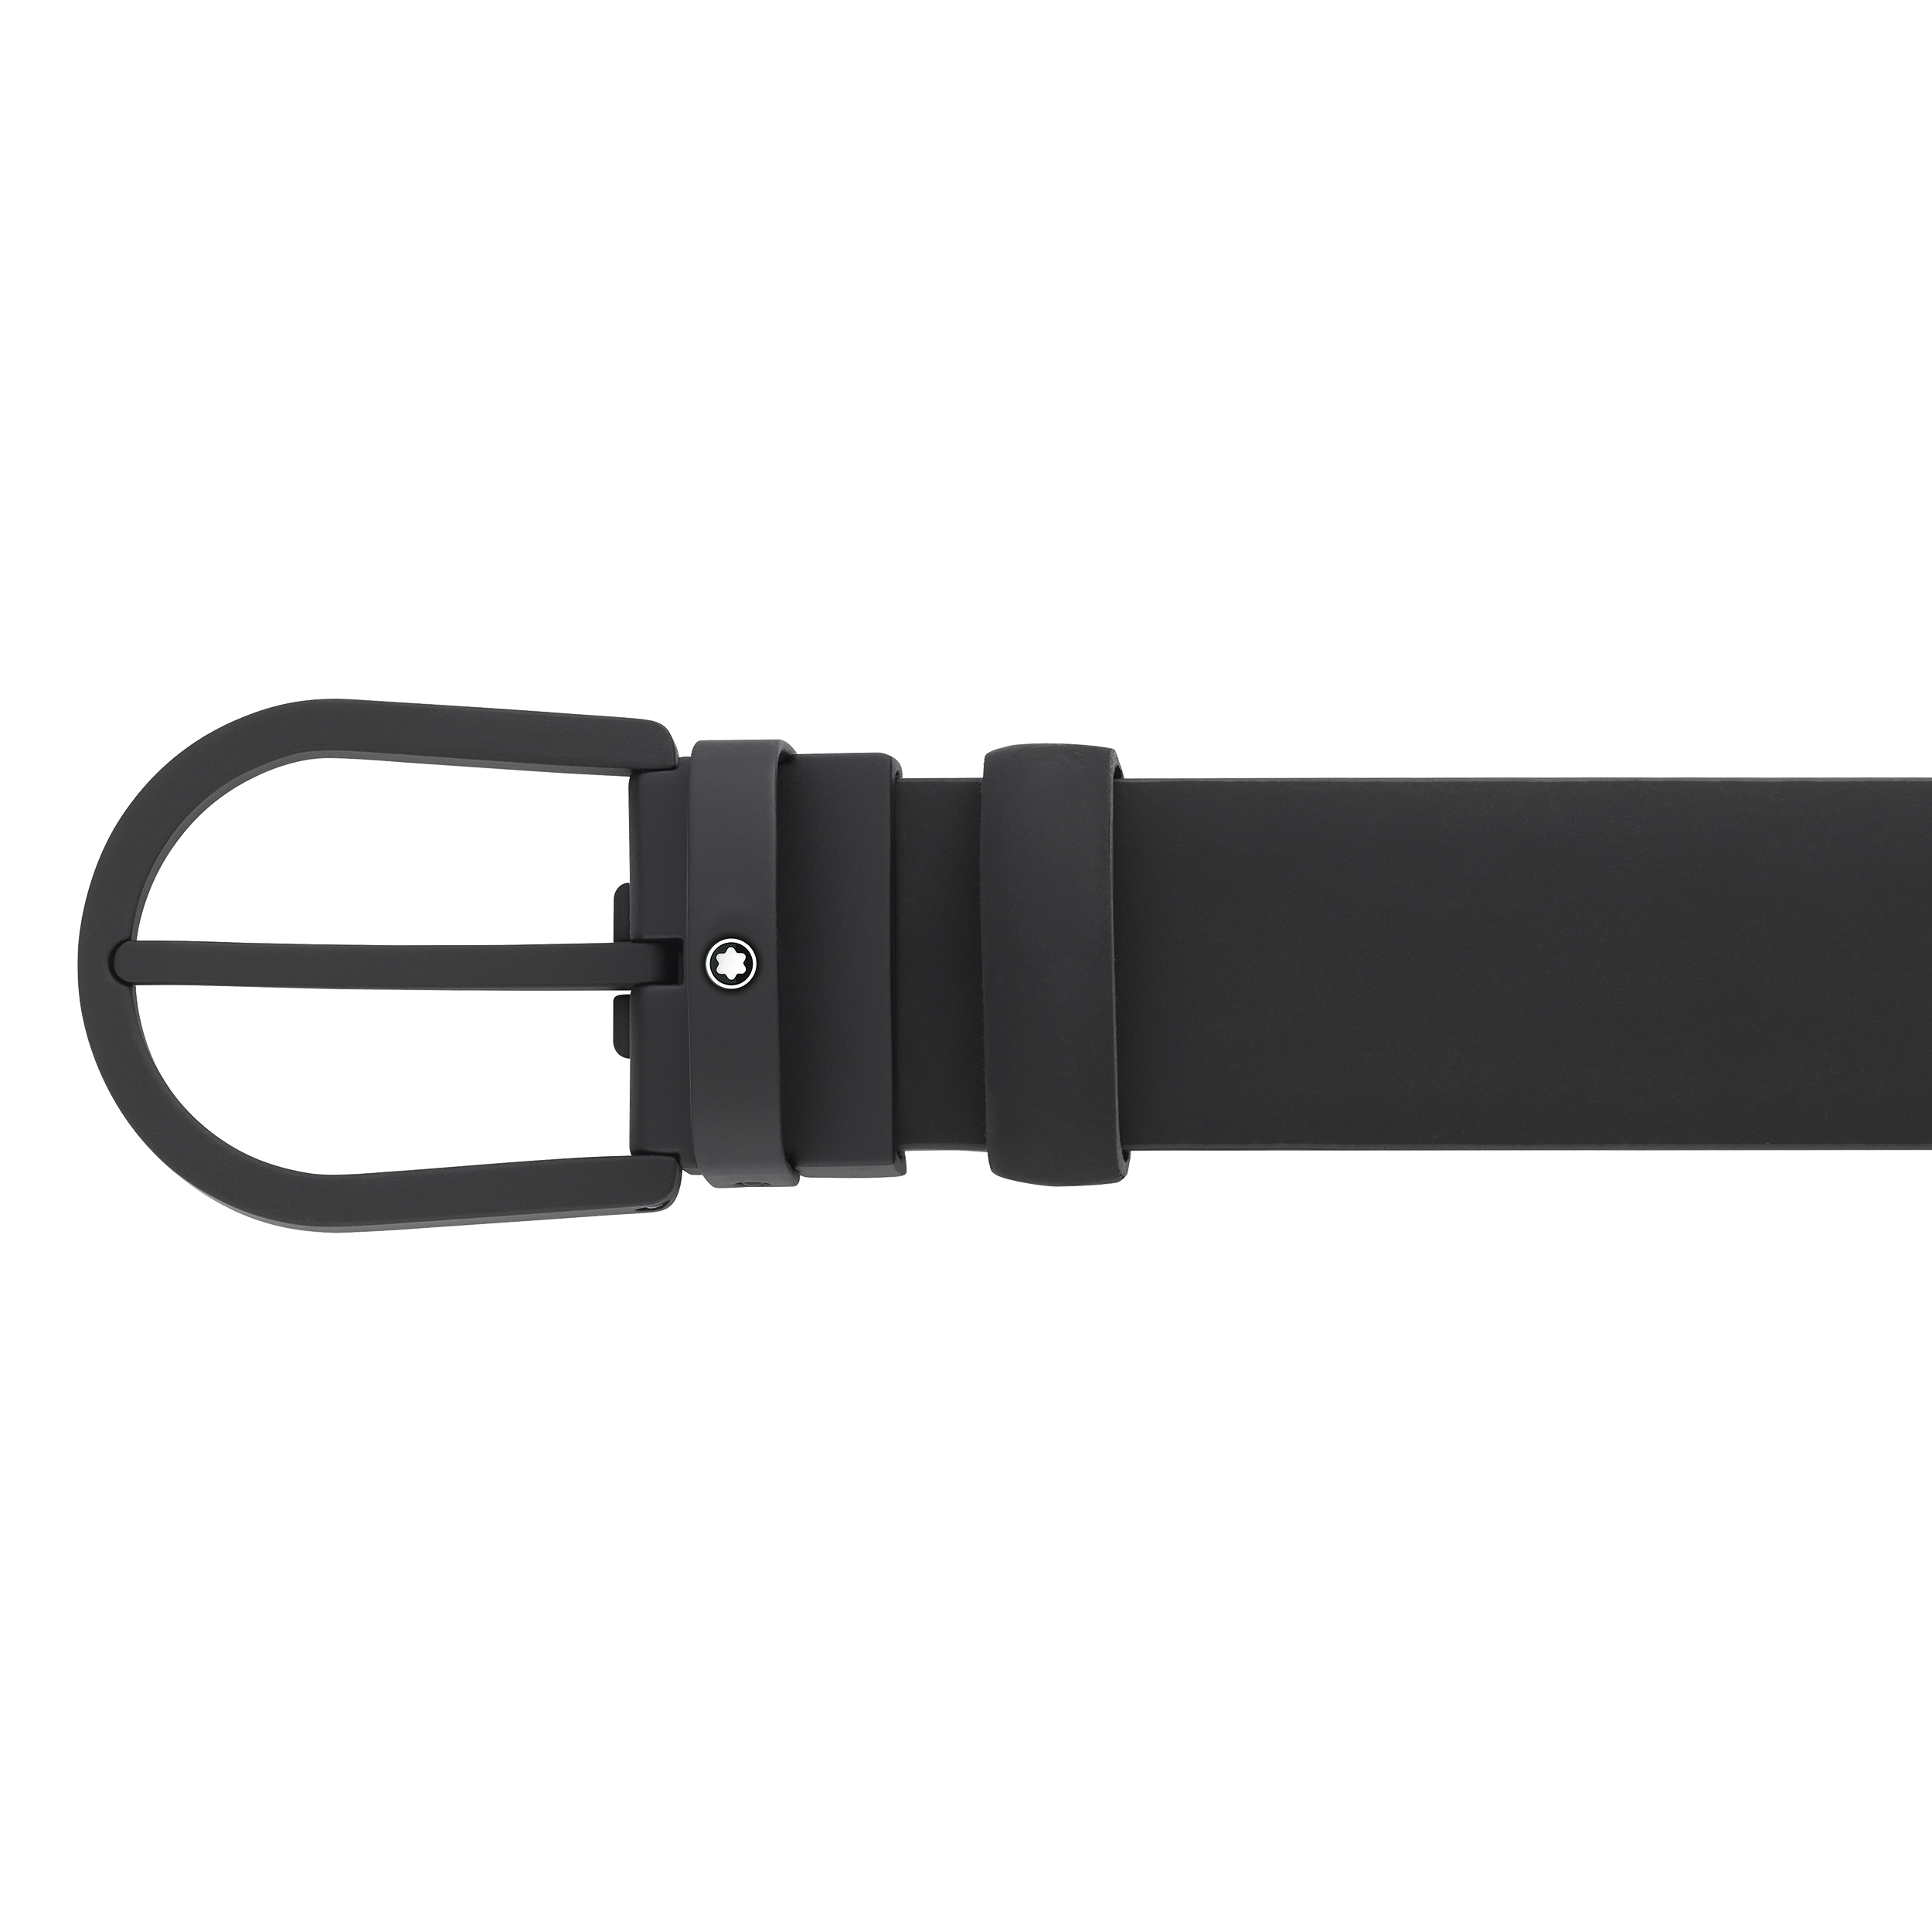 Horseshoe buckle black 35 mm leather belt, image 2